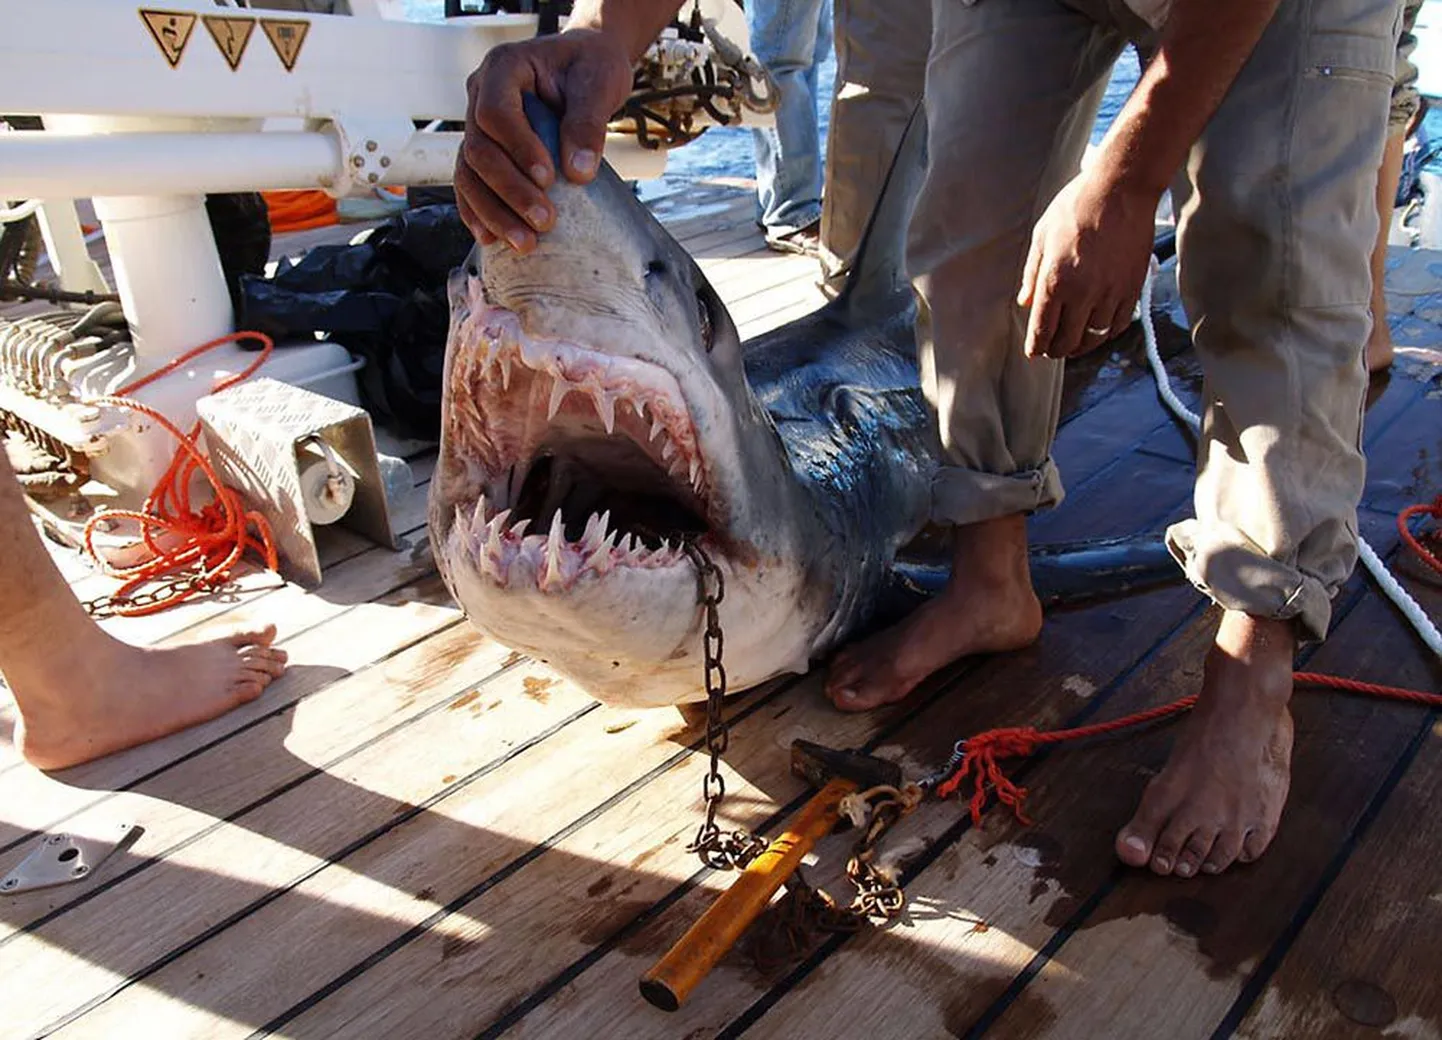 Päev pärast seda kui hai ­vigastas kolme vene ja üht ukraina turisti, püüti merest välja paarimeetrine hai ja kohalikud võimud teatasid, et süüdlane on tabatud. Kolm päeva hiljem tappis hai aga sakslannast turisti. Õiget tapjahaid pole siiani kätte saadud.